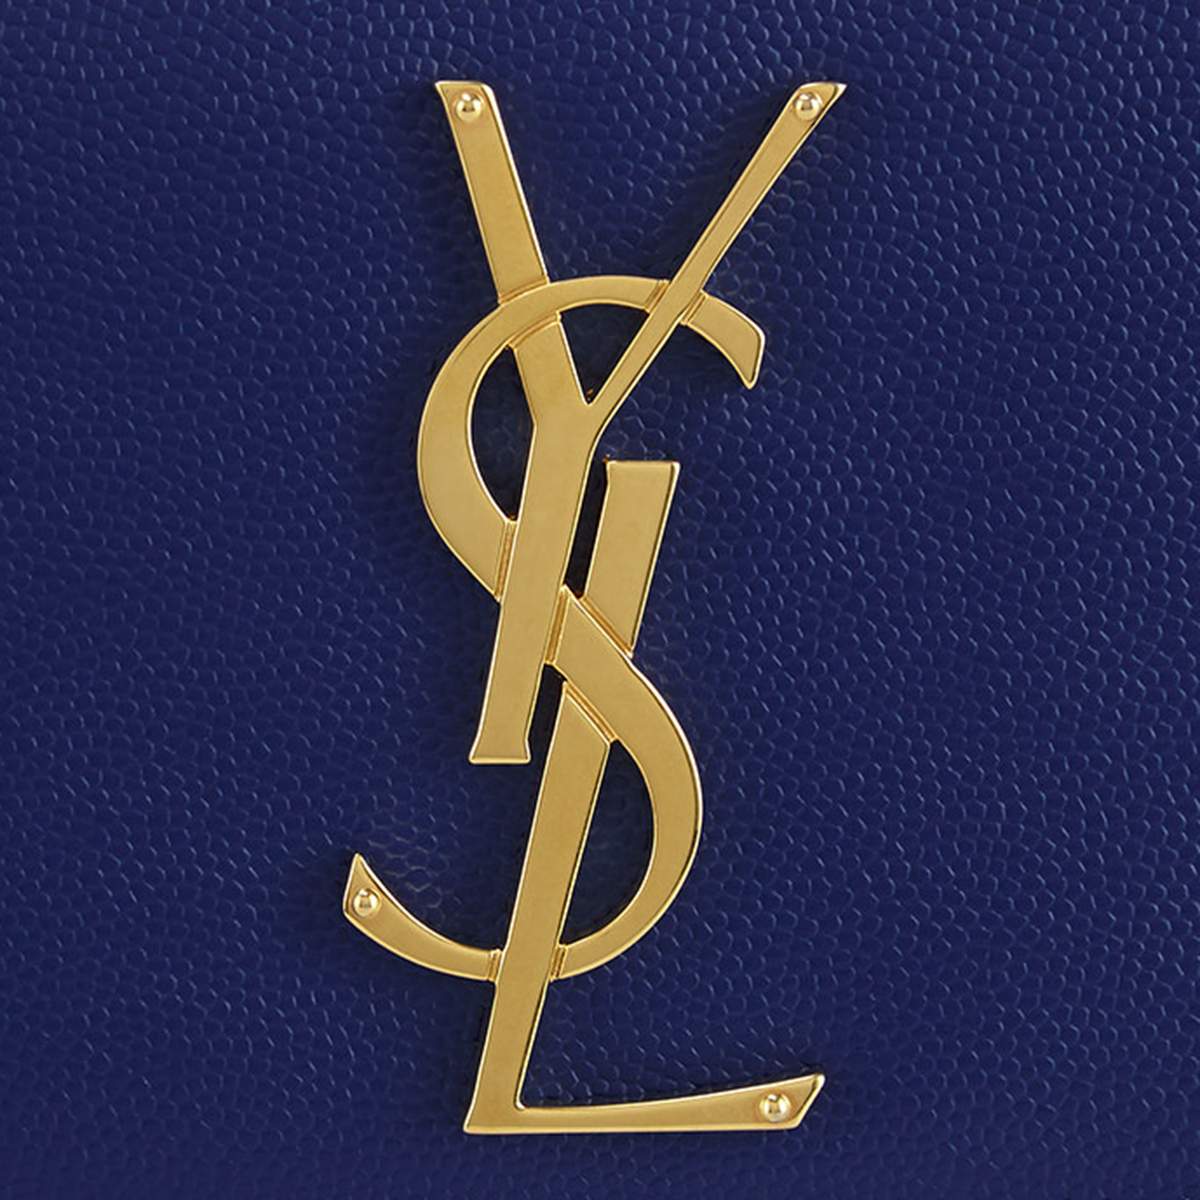 Ив сен лоран бренд. Ивсен Лоран бренд. Ив сен Лоран знак. Yves Saint Laurent логотип. Ив сен Лоран знак бренда.